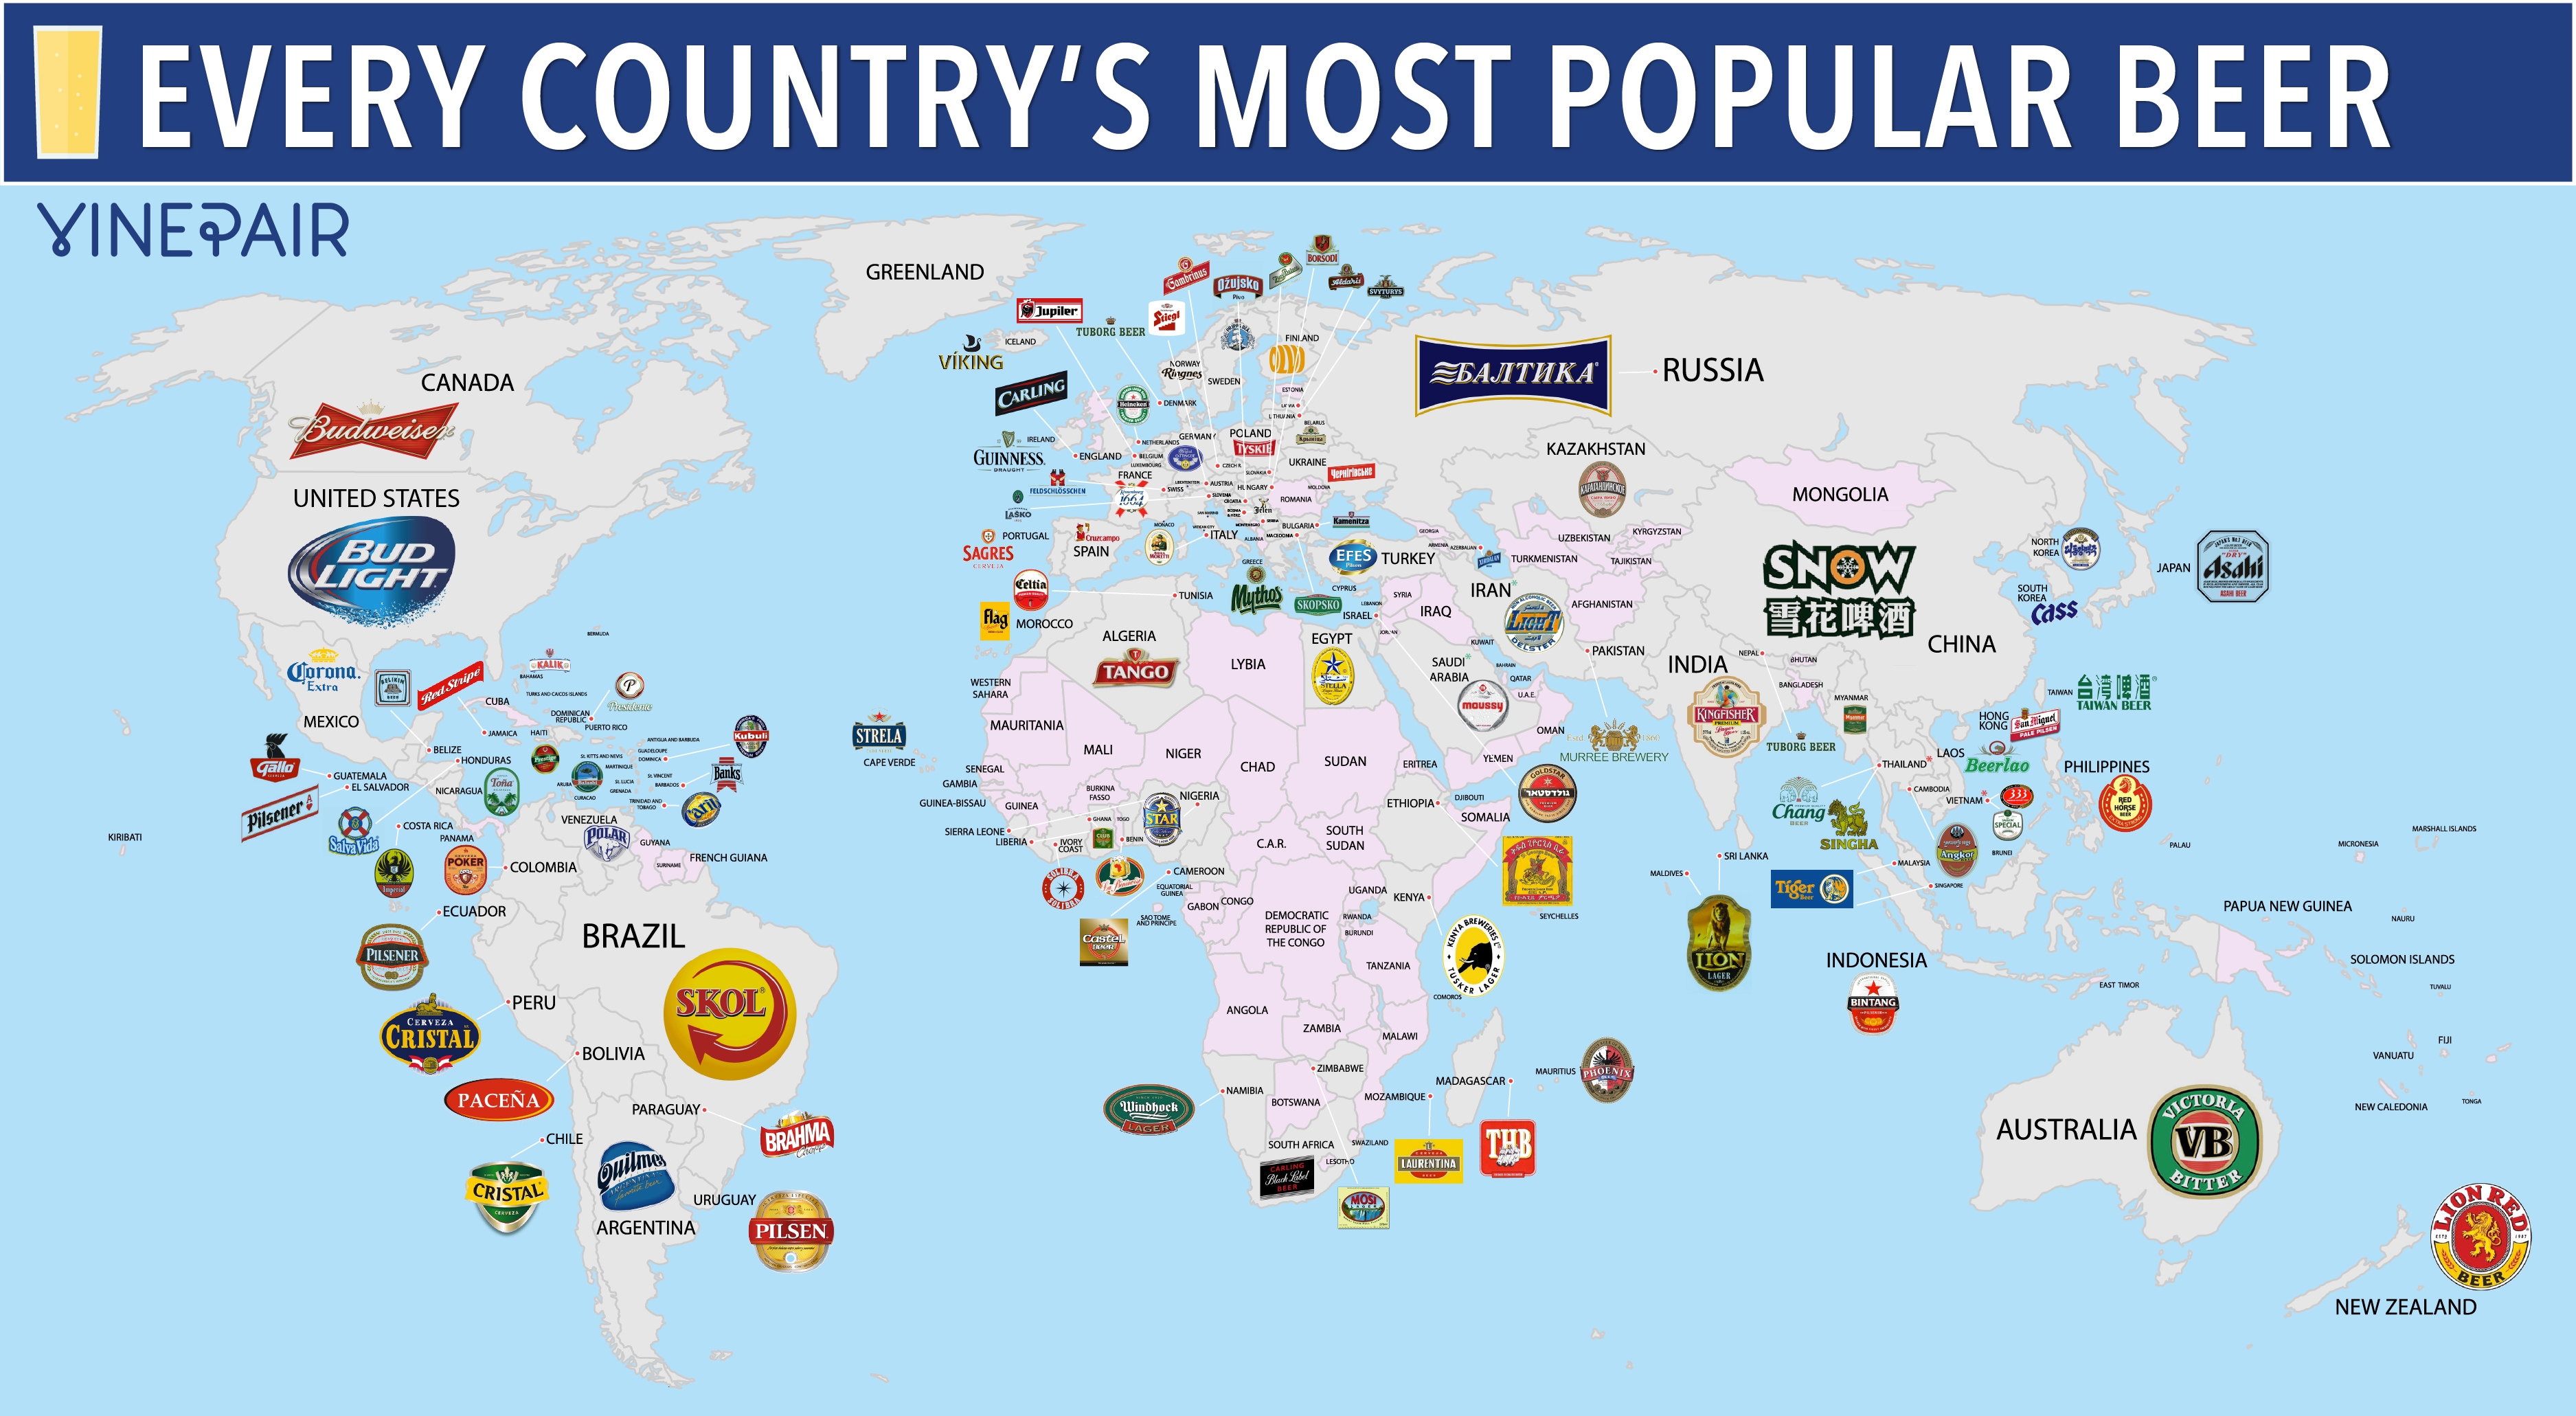 beer-world-map-3000-full-web.jpg